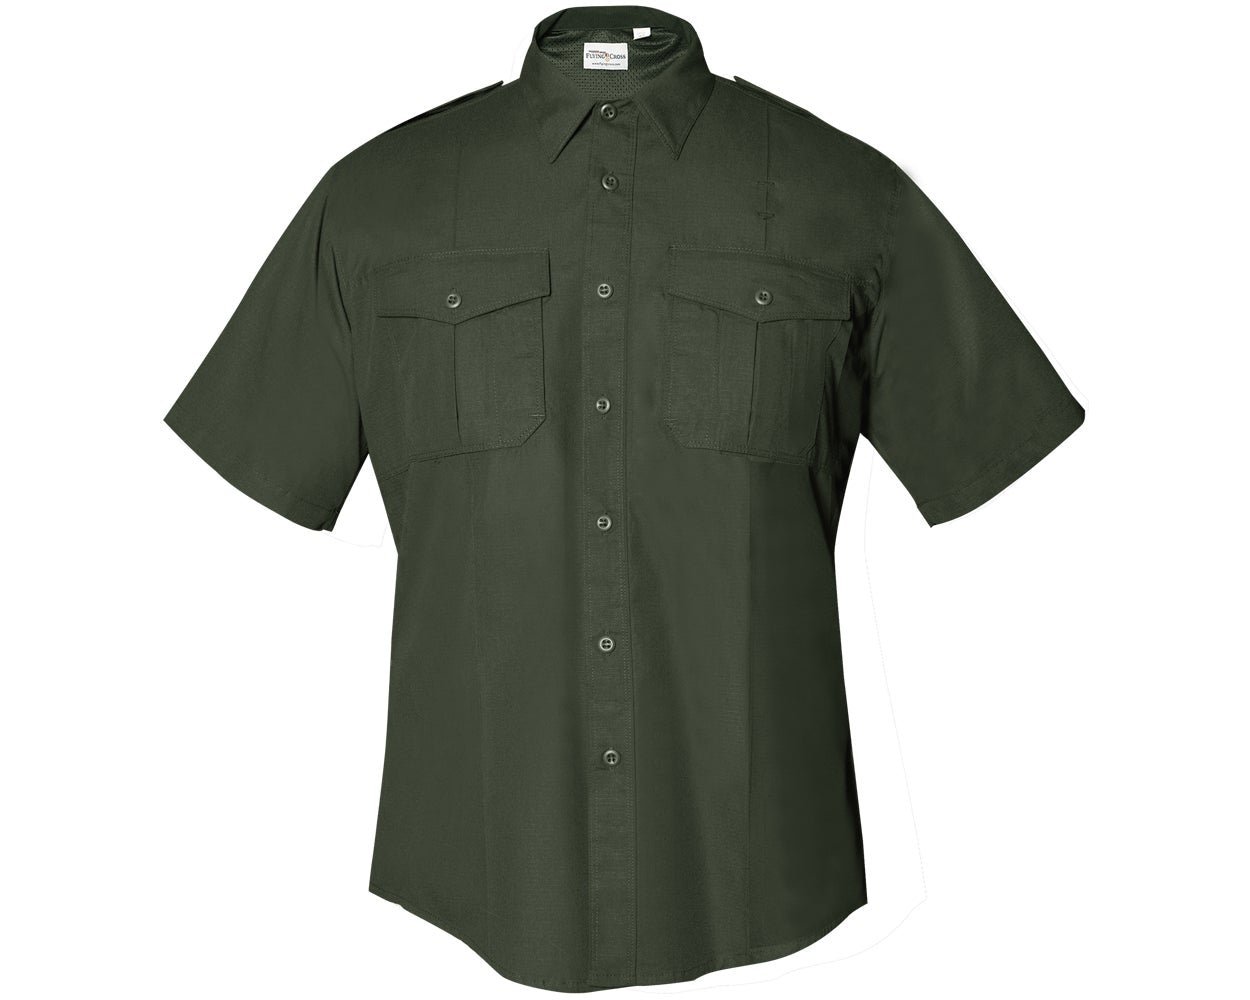 Flying Cross FX STAT Women's Class B Short Sleeve Uniform Shirt FX7100W - OD Green, 52